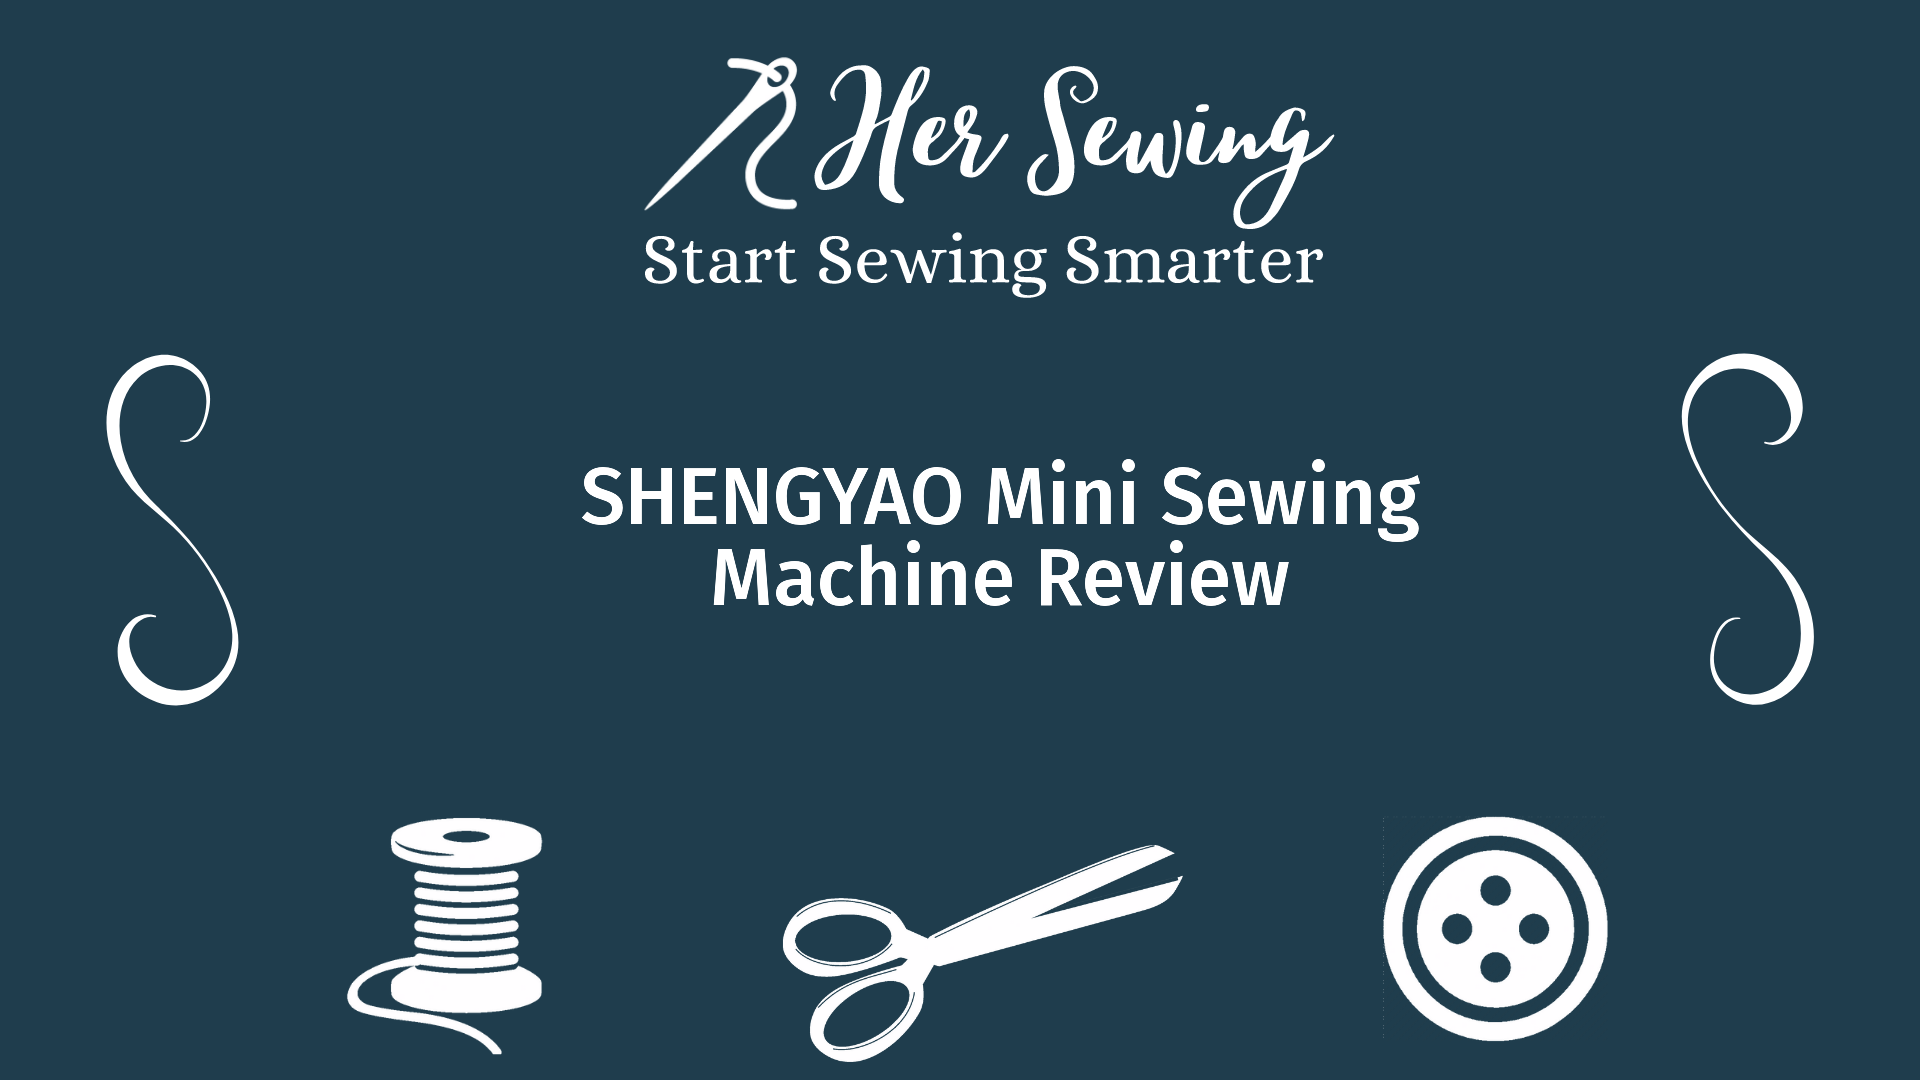 SHENGYAO Mini Sewing Machine Review